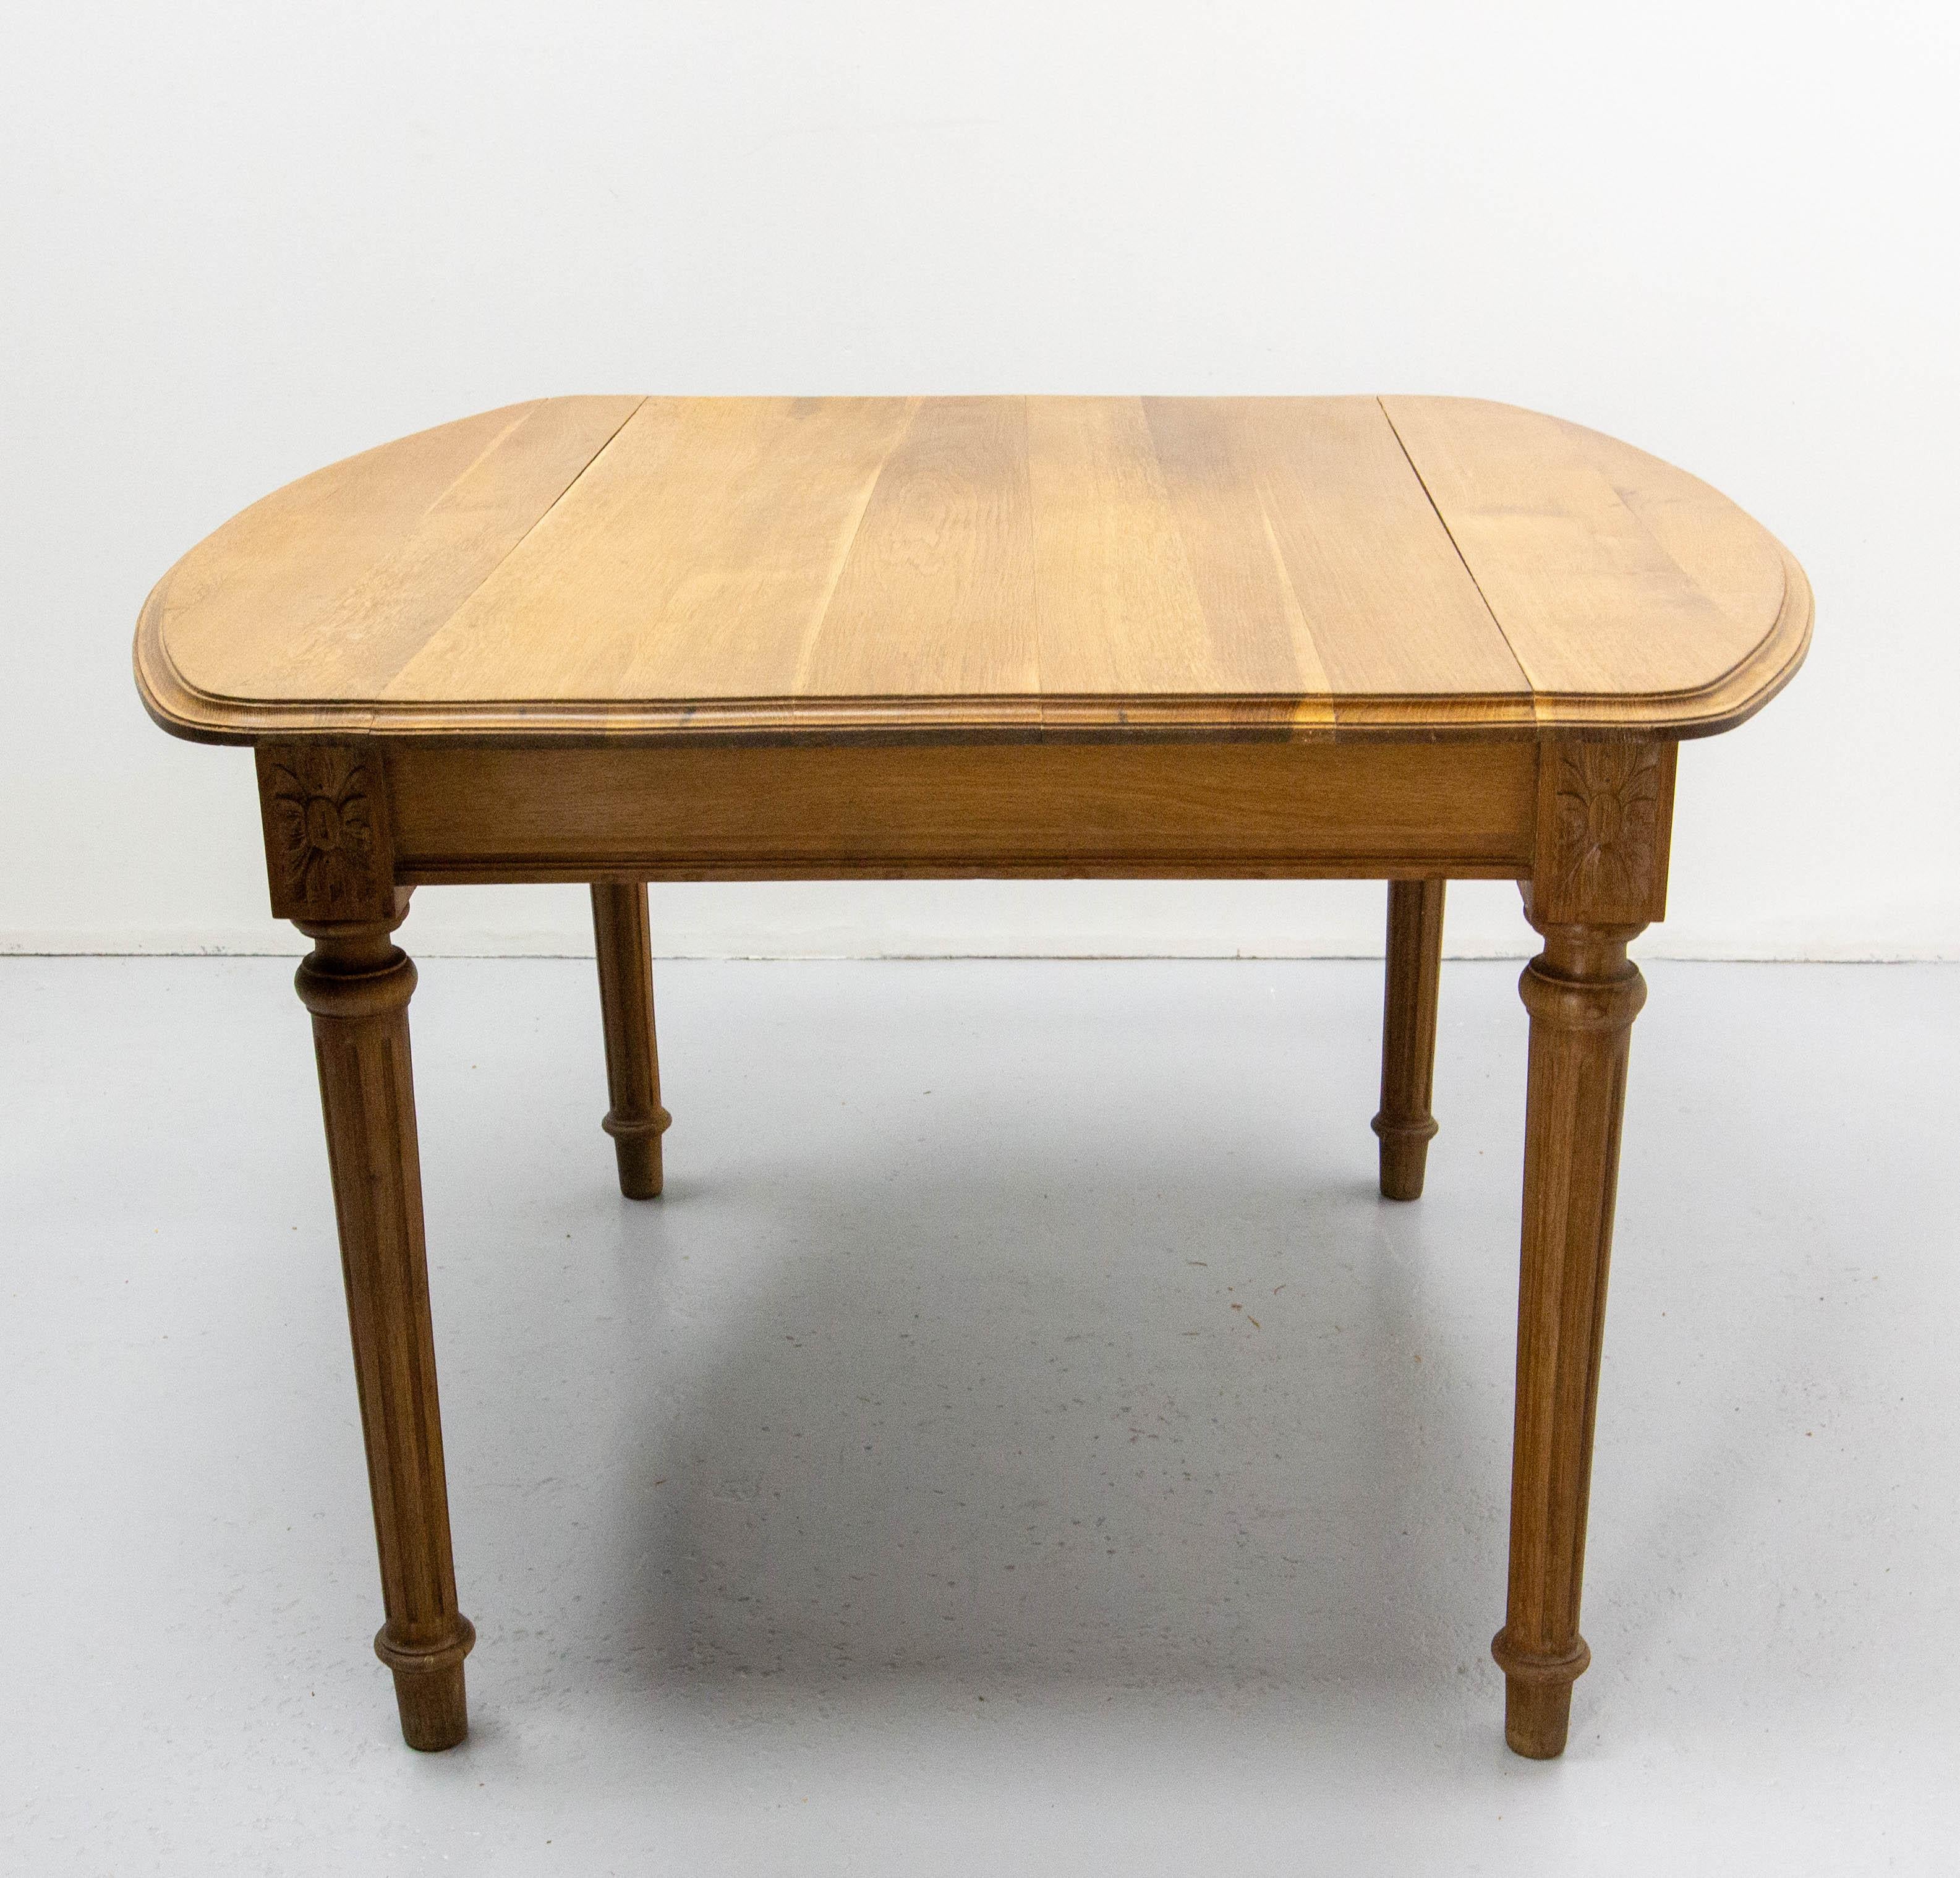 Dieser Esstisch aus Nussbaumholz im Louis-XVI-Stil wurde in Frankreich hergestellt.
Ohne die Verlängerungen ist der Tisch 112 cm (44.46 in.) lang, mit den Verlängerungen misst er 191,5 cm (75.39 in.).
Die Erweiterungen der Tabelle sind die